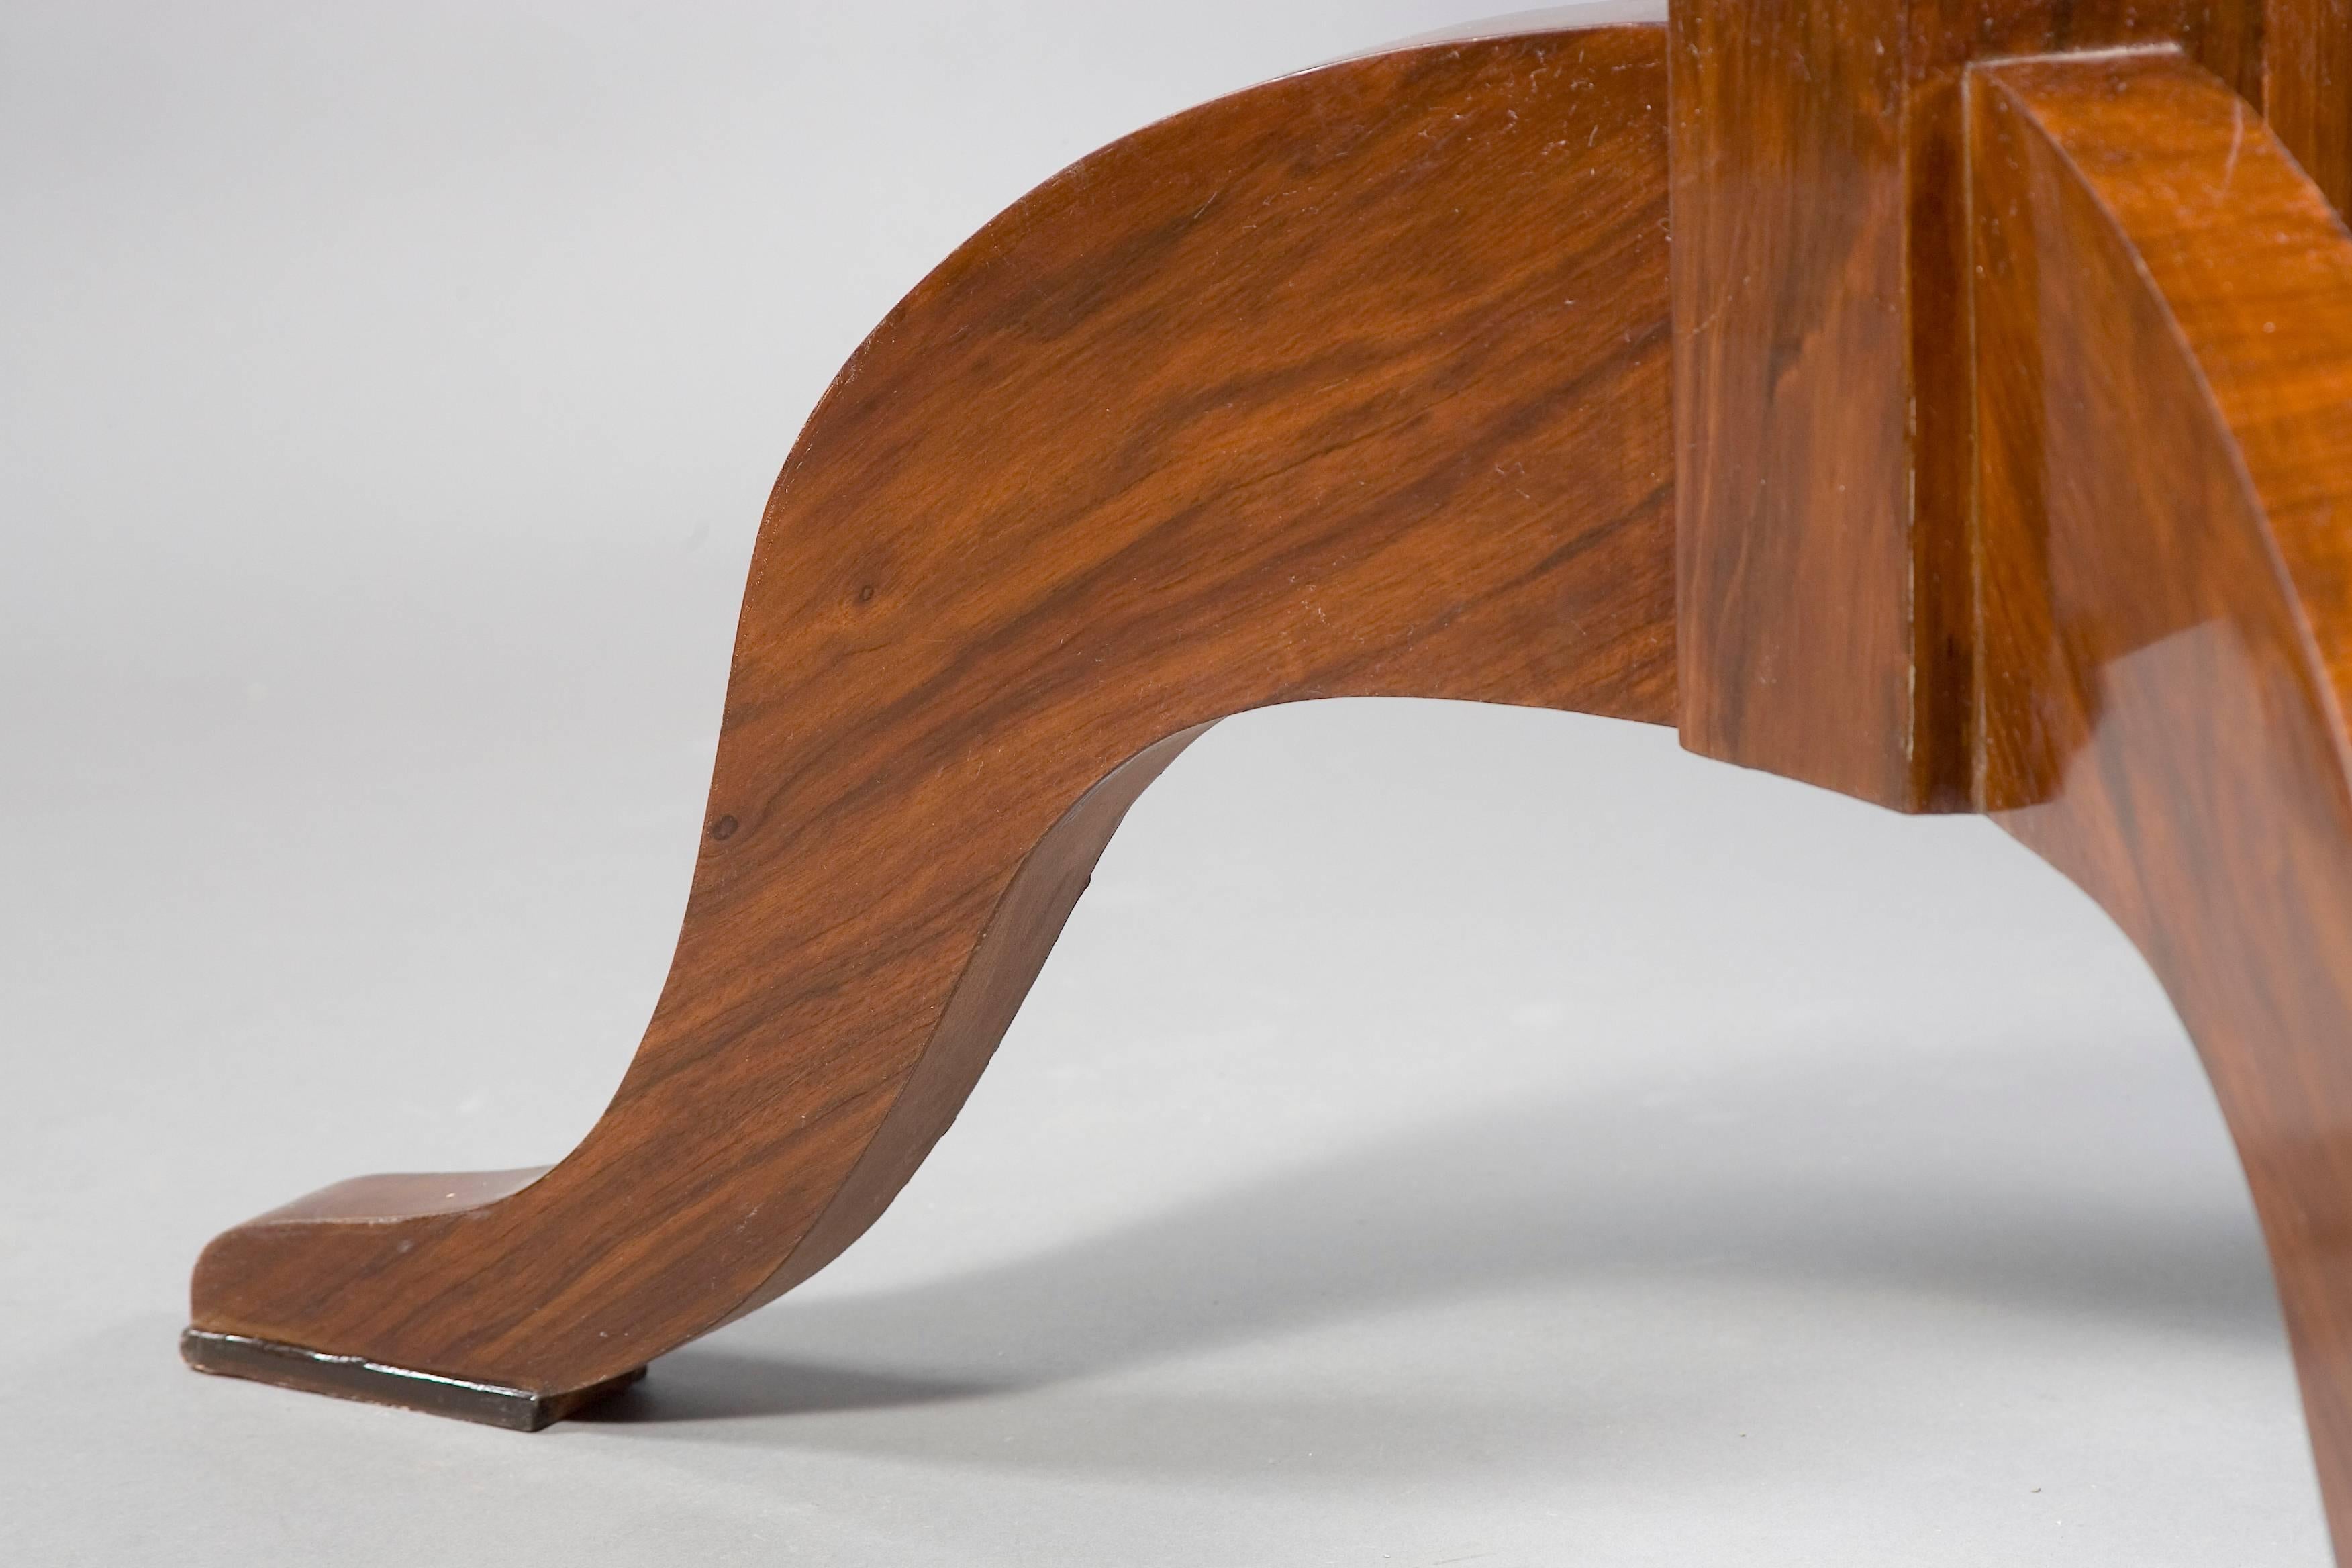 Veneer 20th Century Table in the antique Biedermeier Style Mahogany veneer